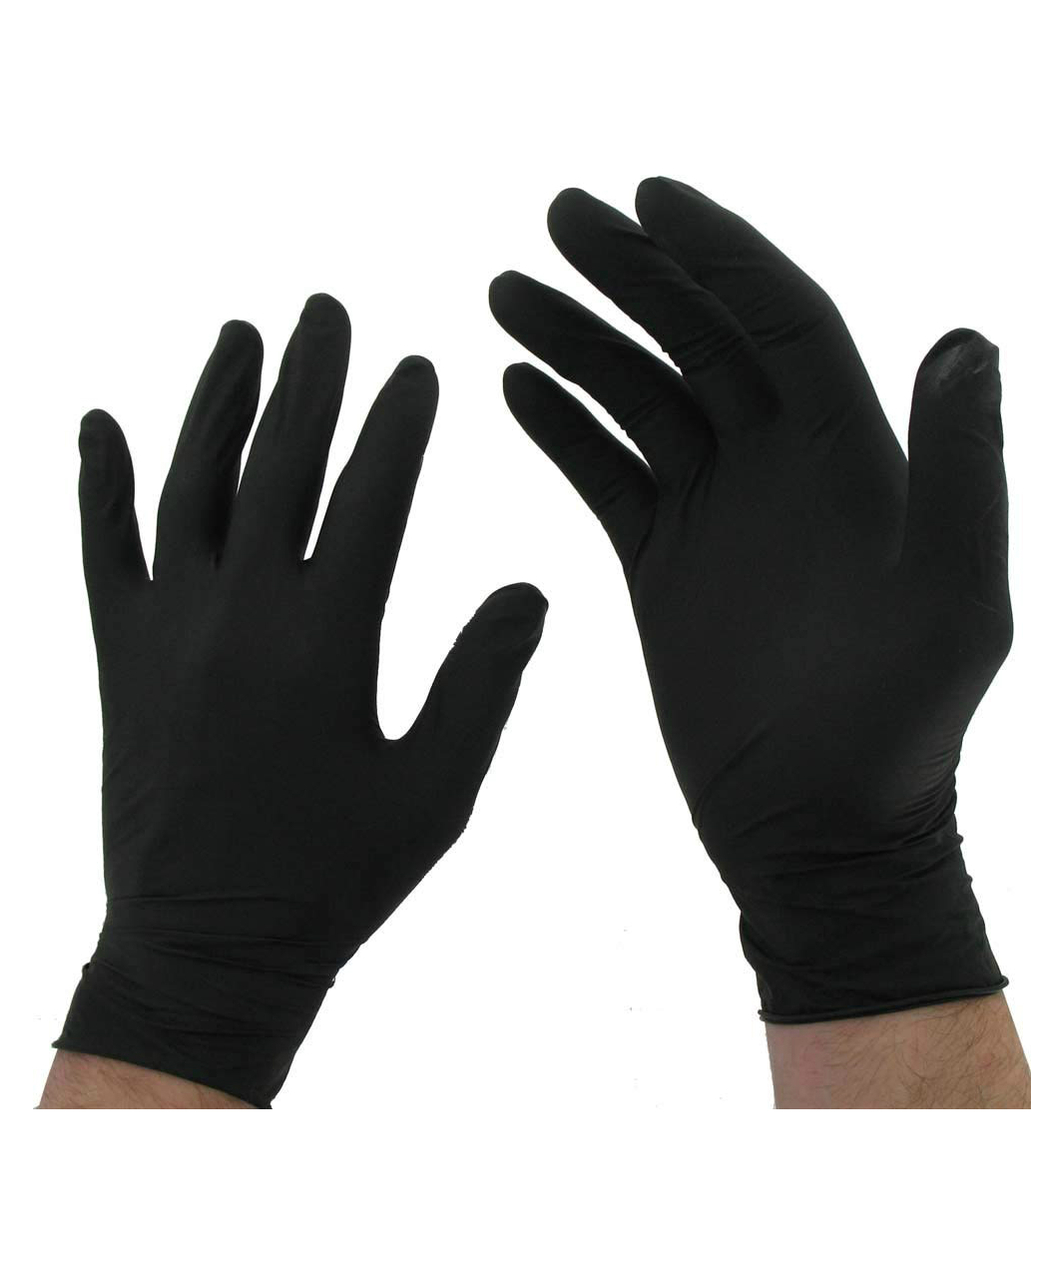 UNIGLOVES черные одноразовые перчатки из латекса (100 шт.)